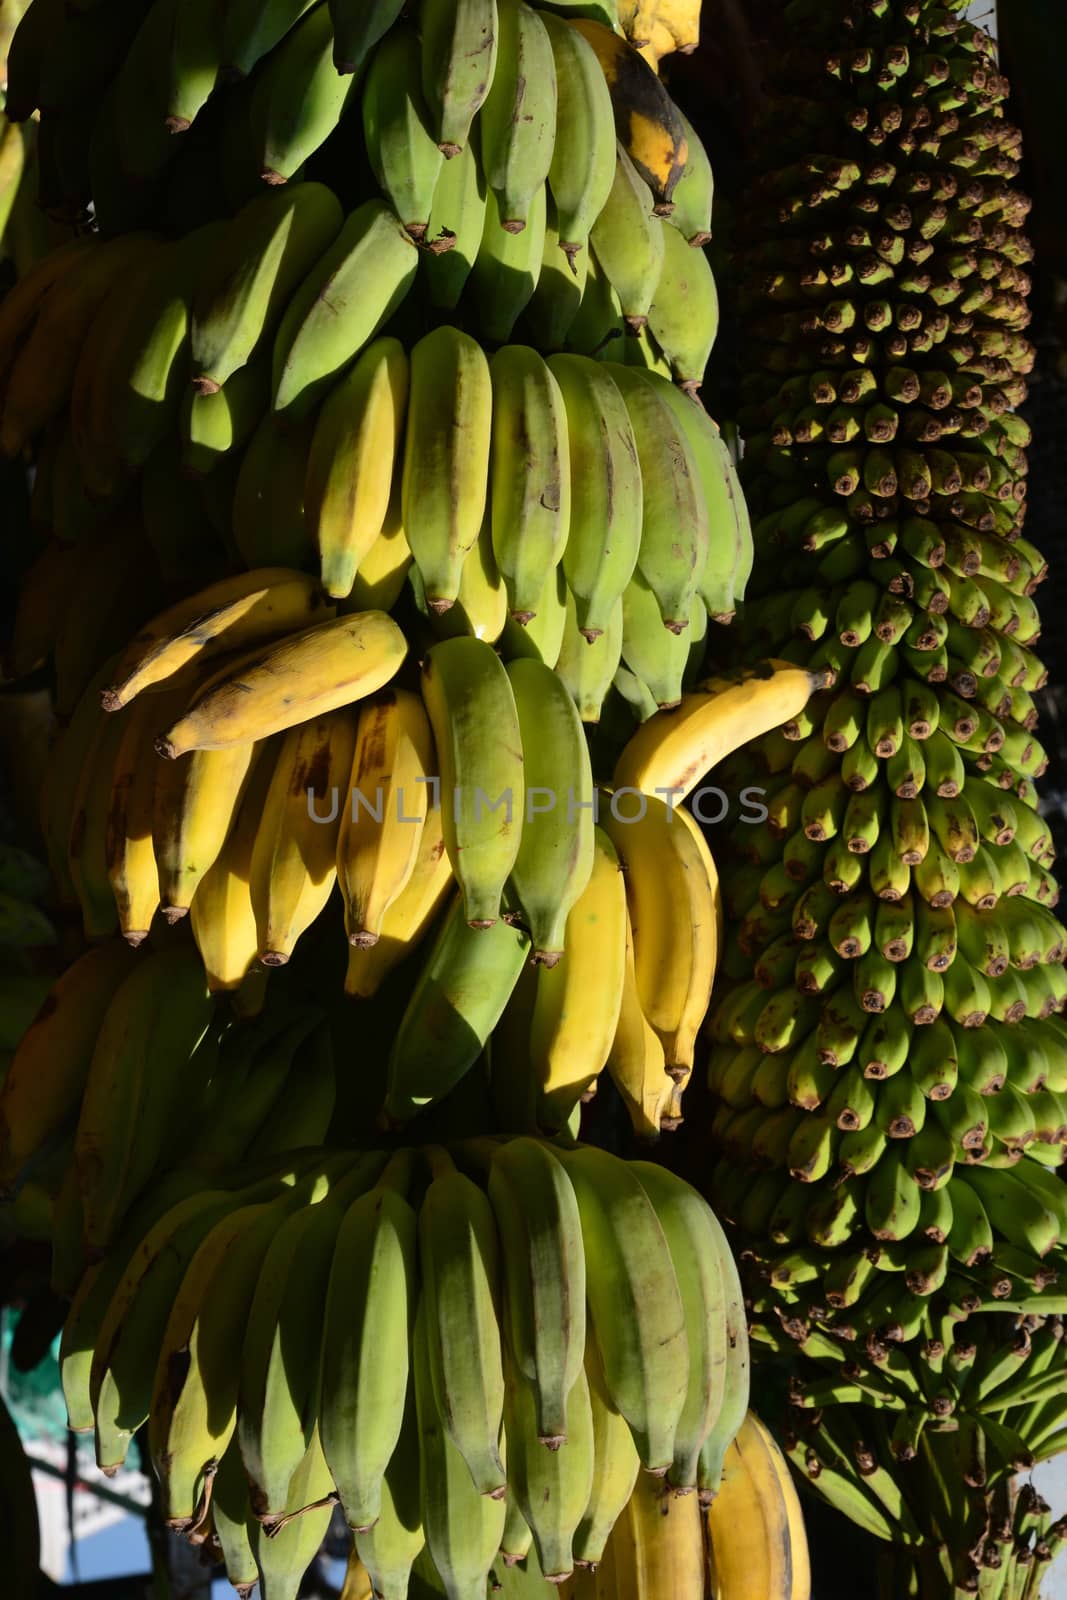 Bunch of  bananas in the banana garden. Agricultural plantation.